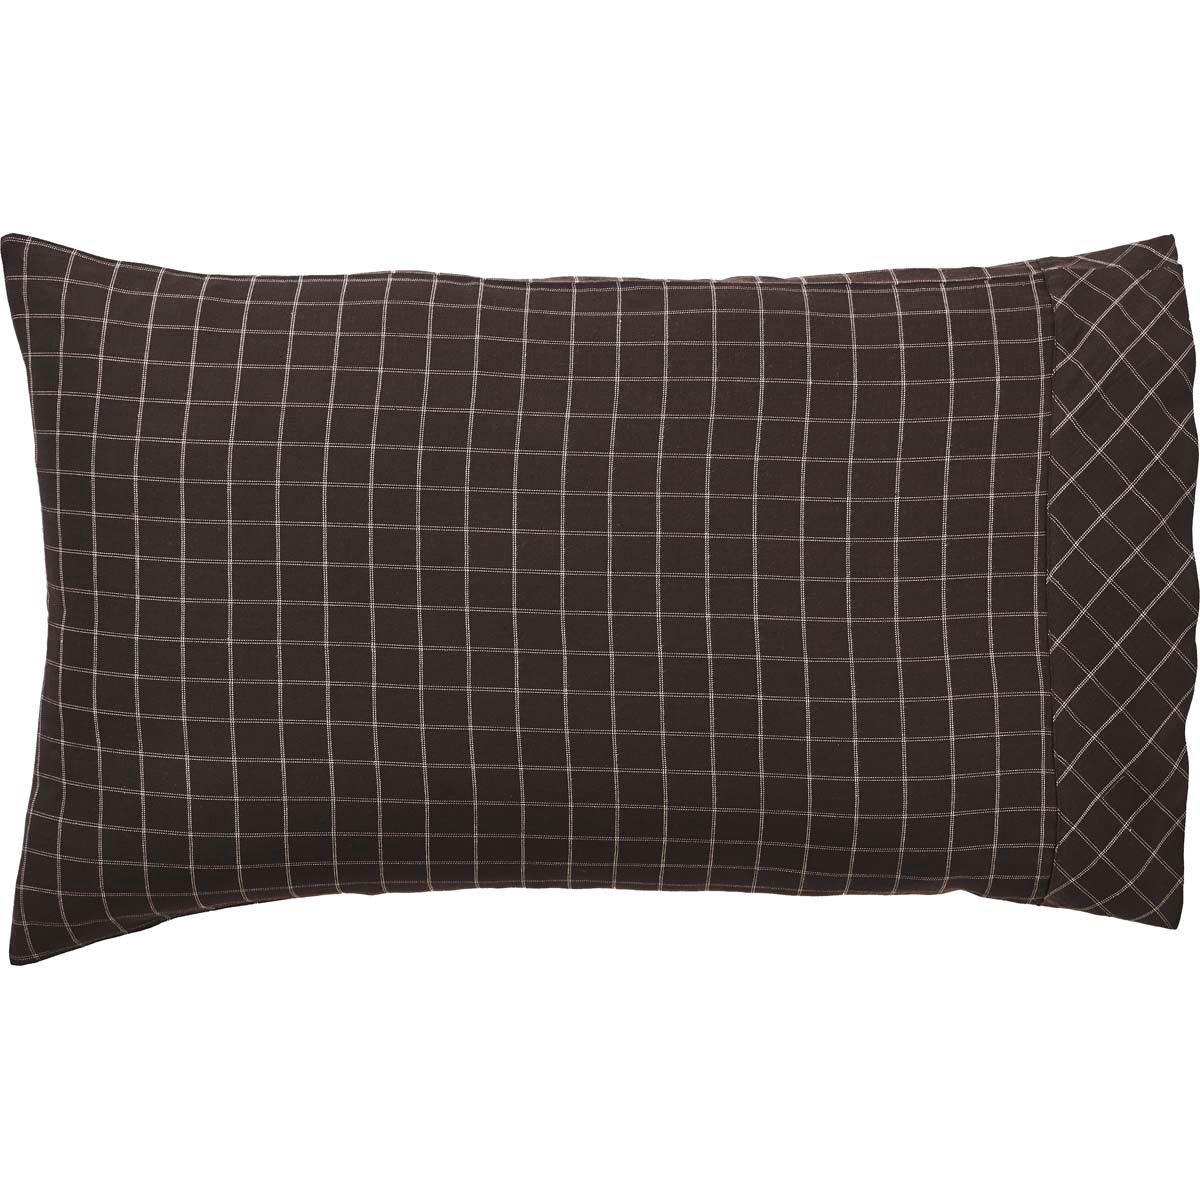 Wyatt Standard Pillow Case Set of 2 21x30 VHC Brands - The Fox Decor